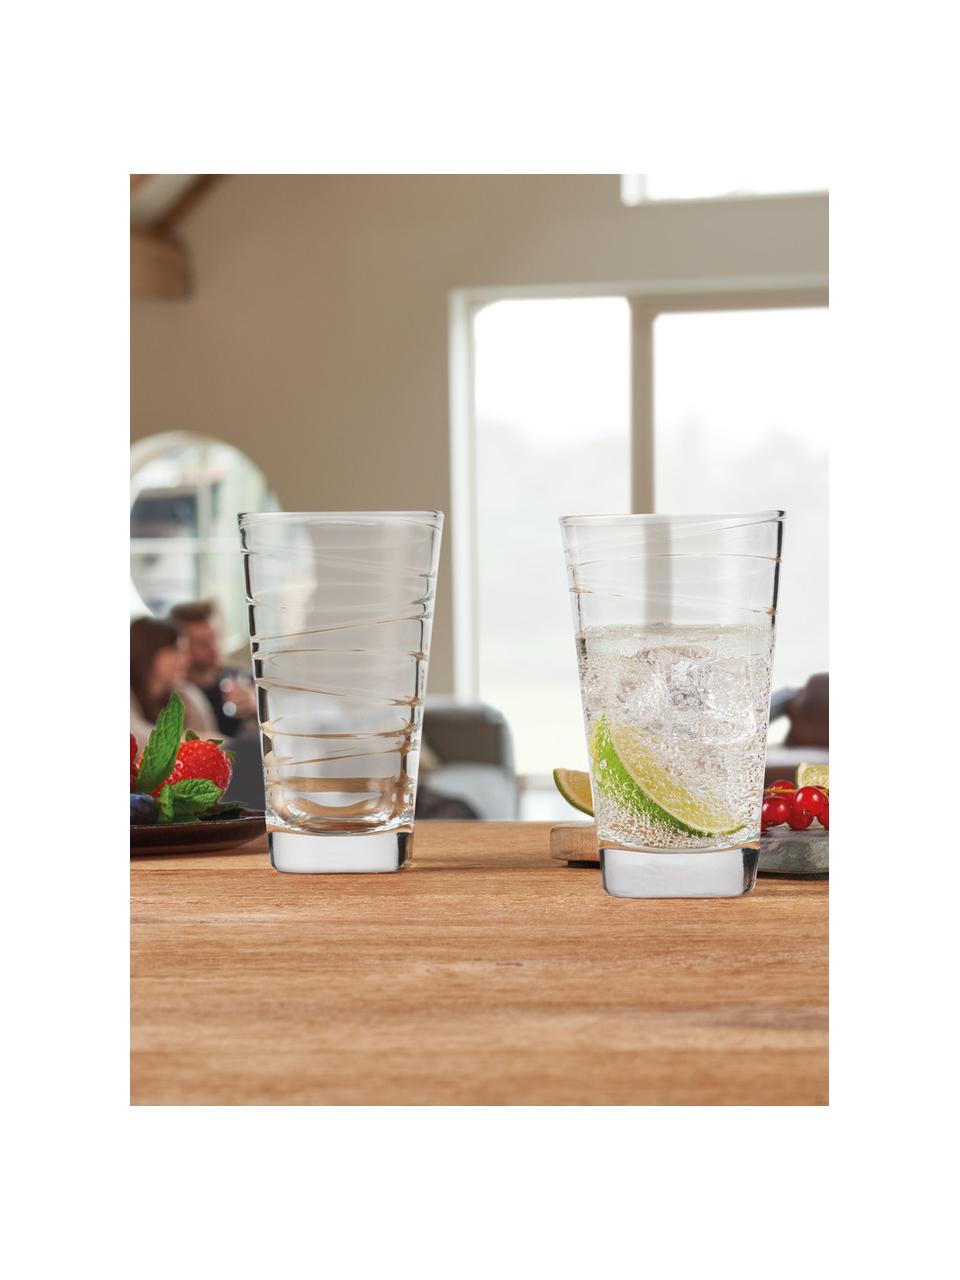 Wassergläser Vario mit feinen Linien, 6 Stück, Kalk-Natron Glas, Transparent, Ø 8 x H 13 cm